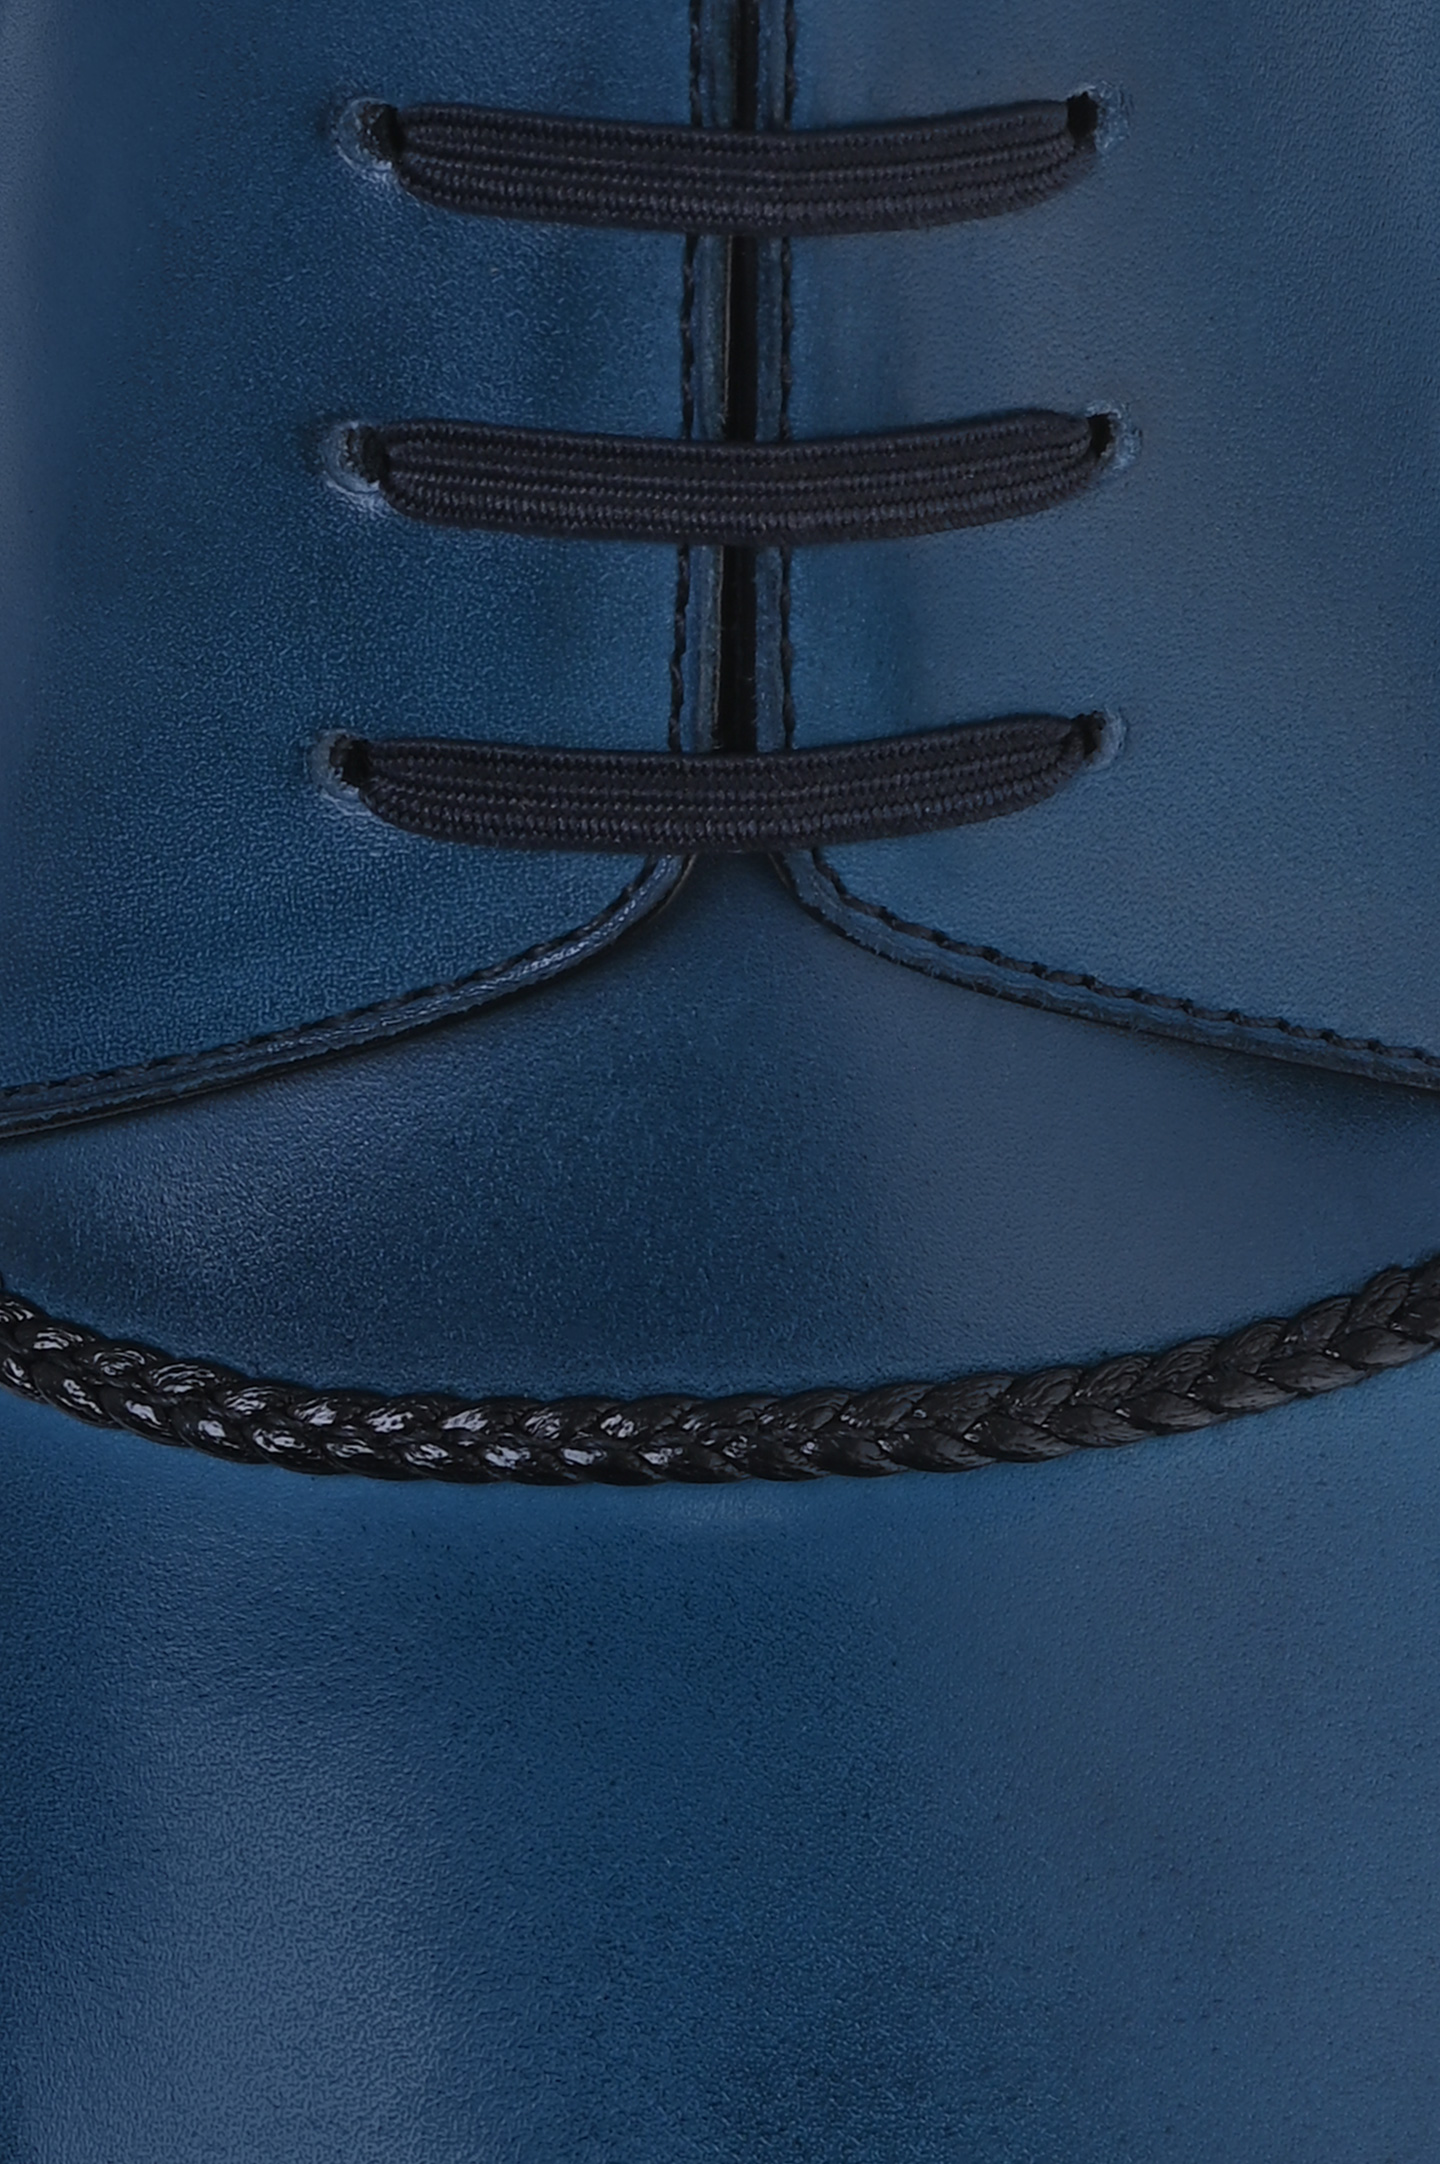 Туфли ARTIOLI 0G6S396/BIS, цвет: Синий, Мужской